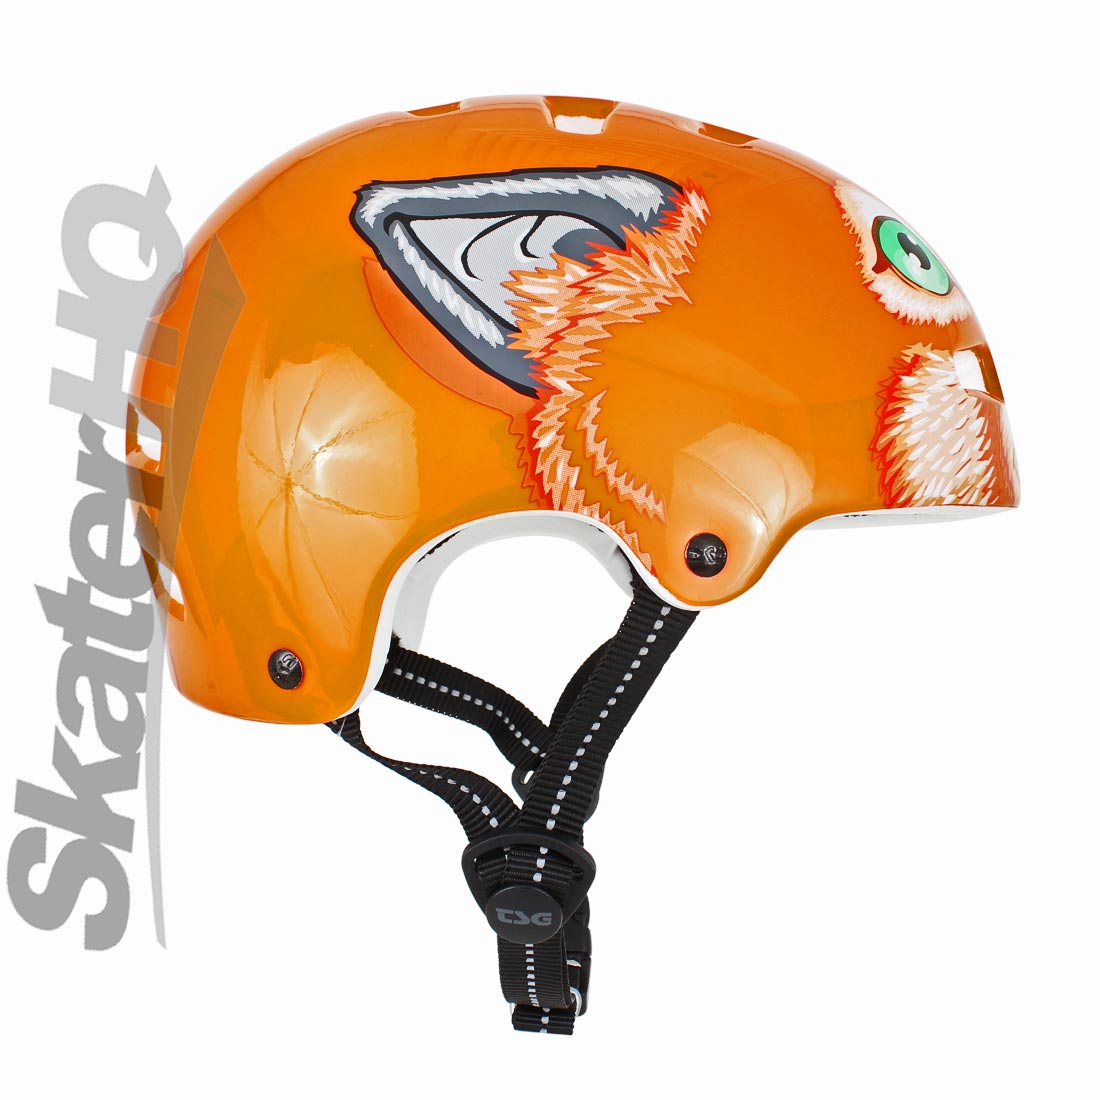 TSG Nipper Mini Zorro JXXS/JXS 48-51cm Helmets